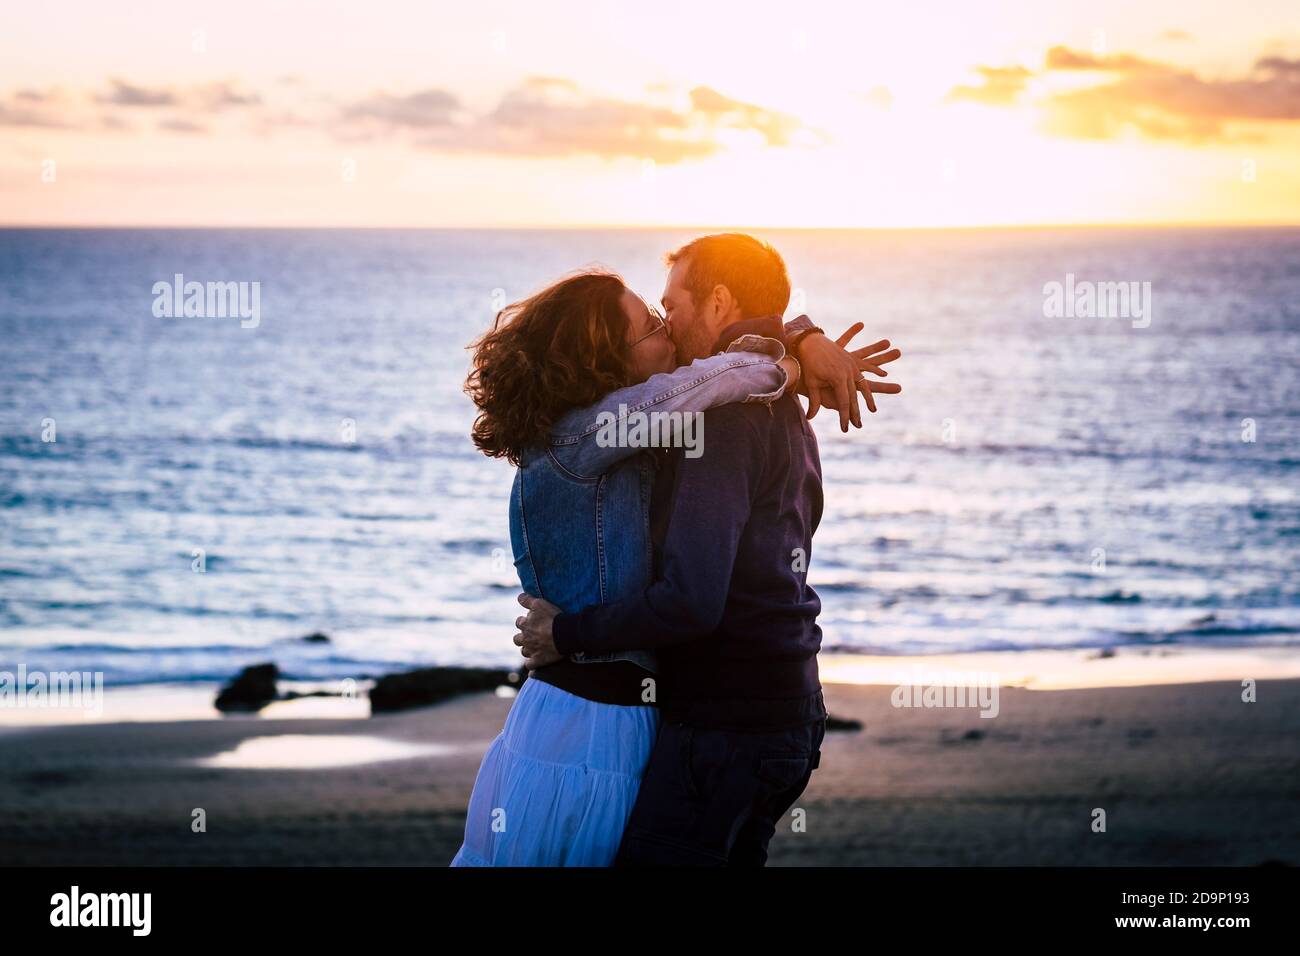 Romantisches Paar genießen Sonnenuntergang am Strand küssen und lieben Einander - kaukasischen Menschen haben Romantik Sommer Urlaub Urlaub umarmt mit Liebe Stockfoto